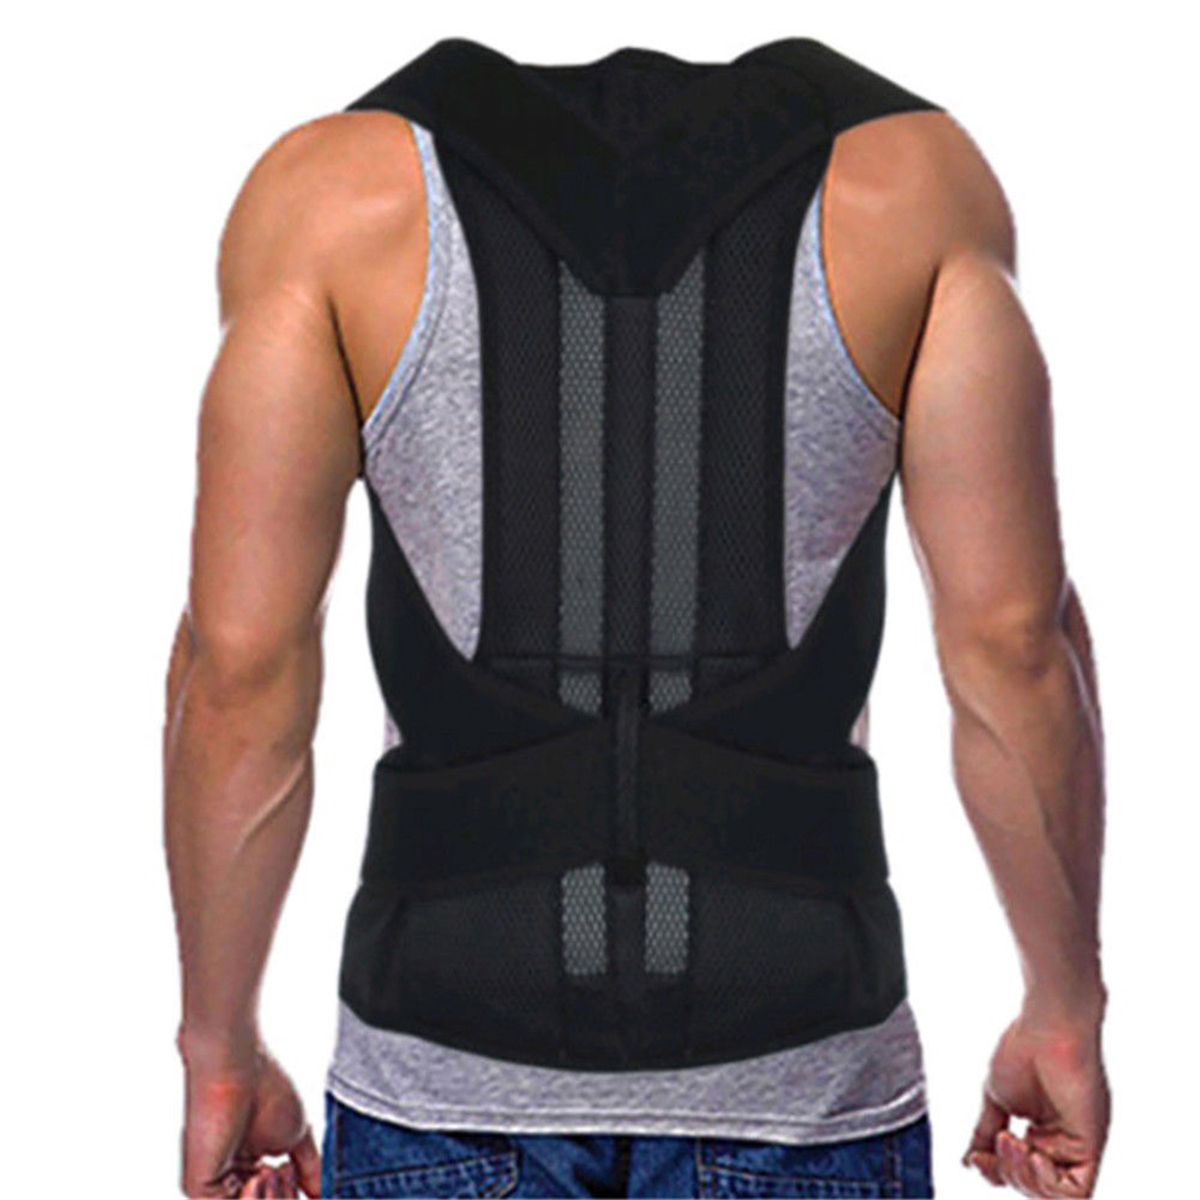 Adjustable-Back-Support-Belt-Back-Posture-Corrector-Shoulder-Lumbar-Spine-Support-Back-Protector-1357386-10